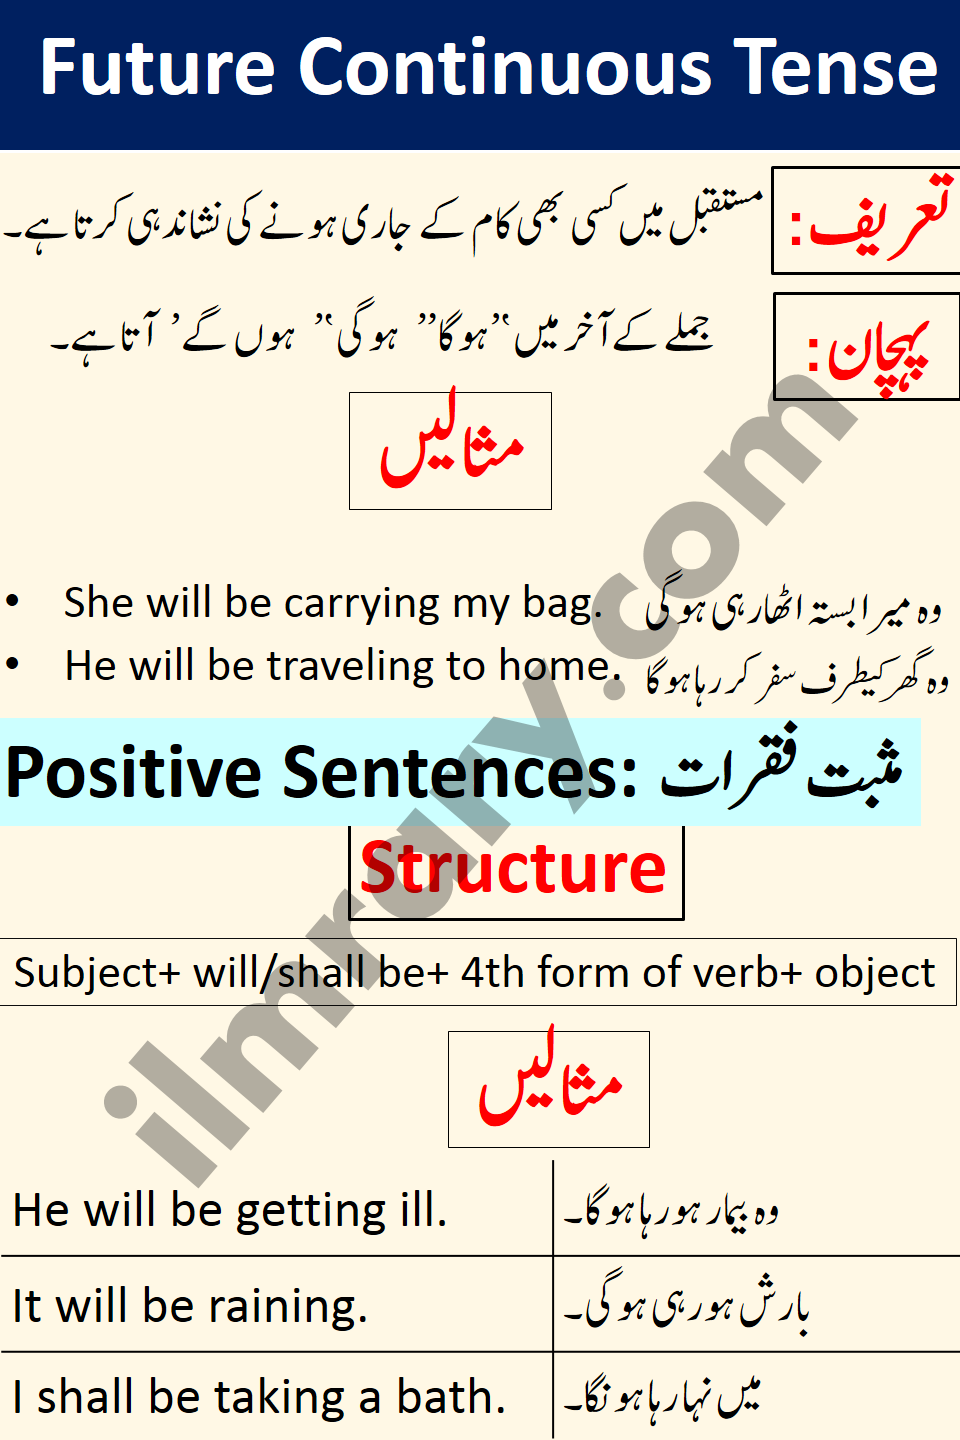 Positive Sentences for Future Continuous Tense in Urdu